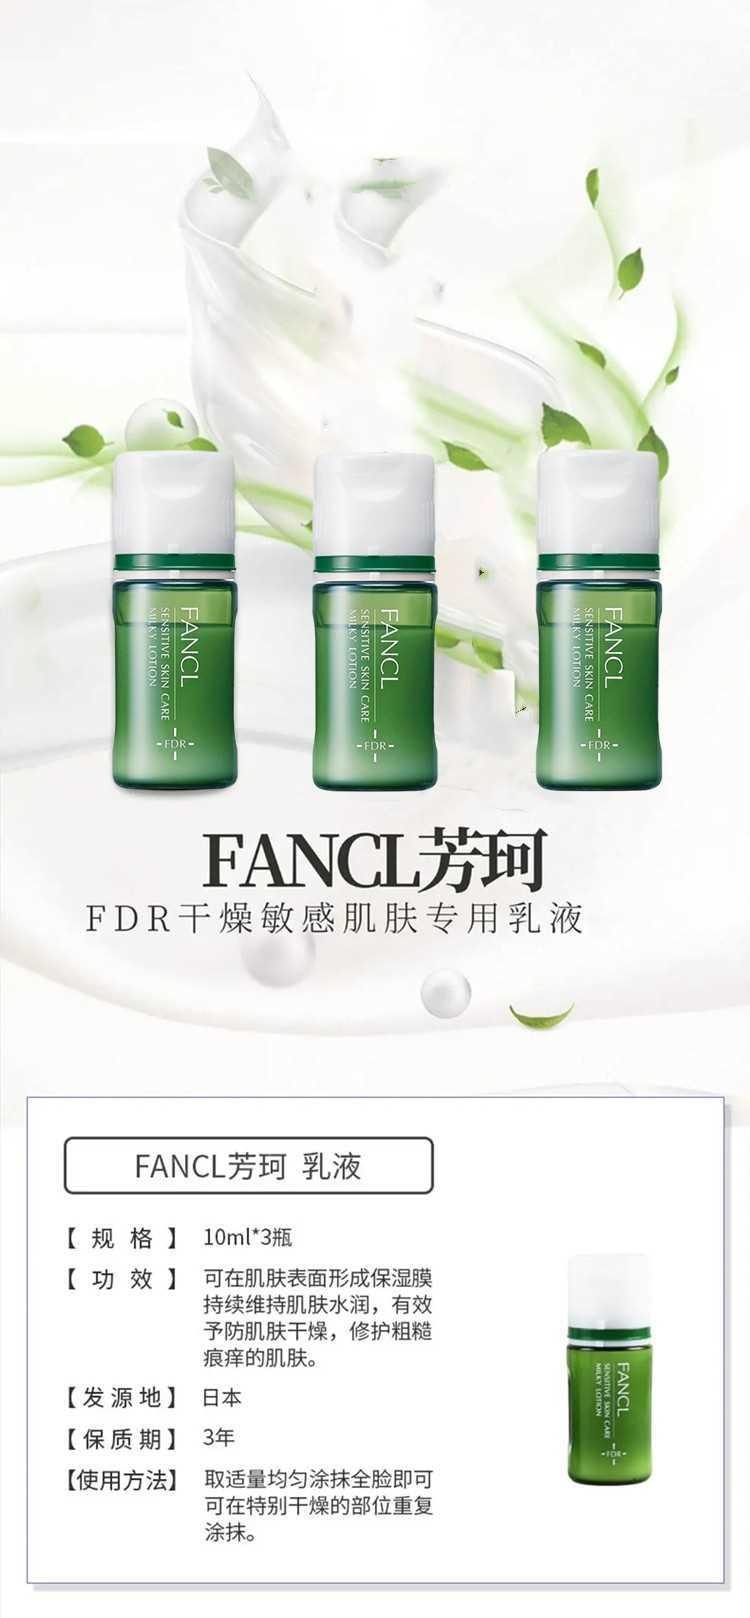 【日本直效郵件】FANCL芳珂 FDR敏感肌乳液 10ml*3